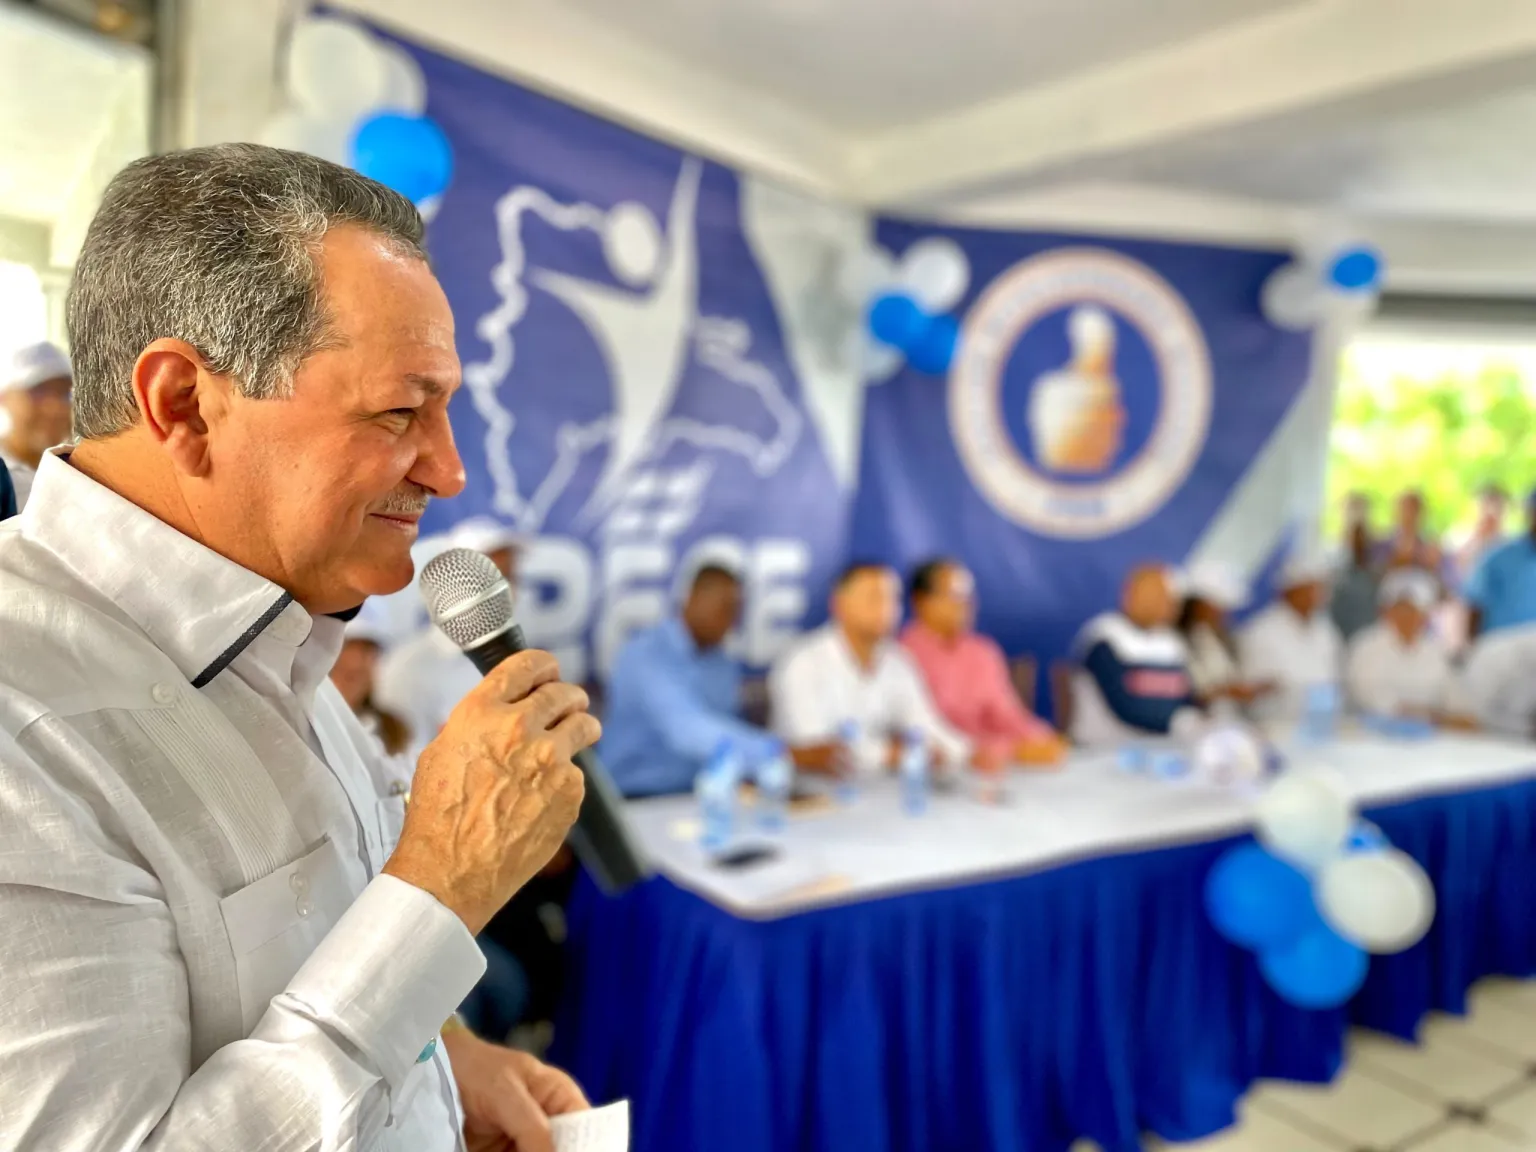 Porfirio Peralta felicita al presidente Luis Abinader